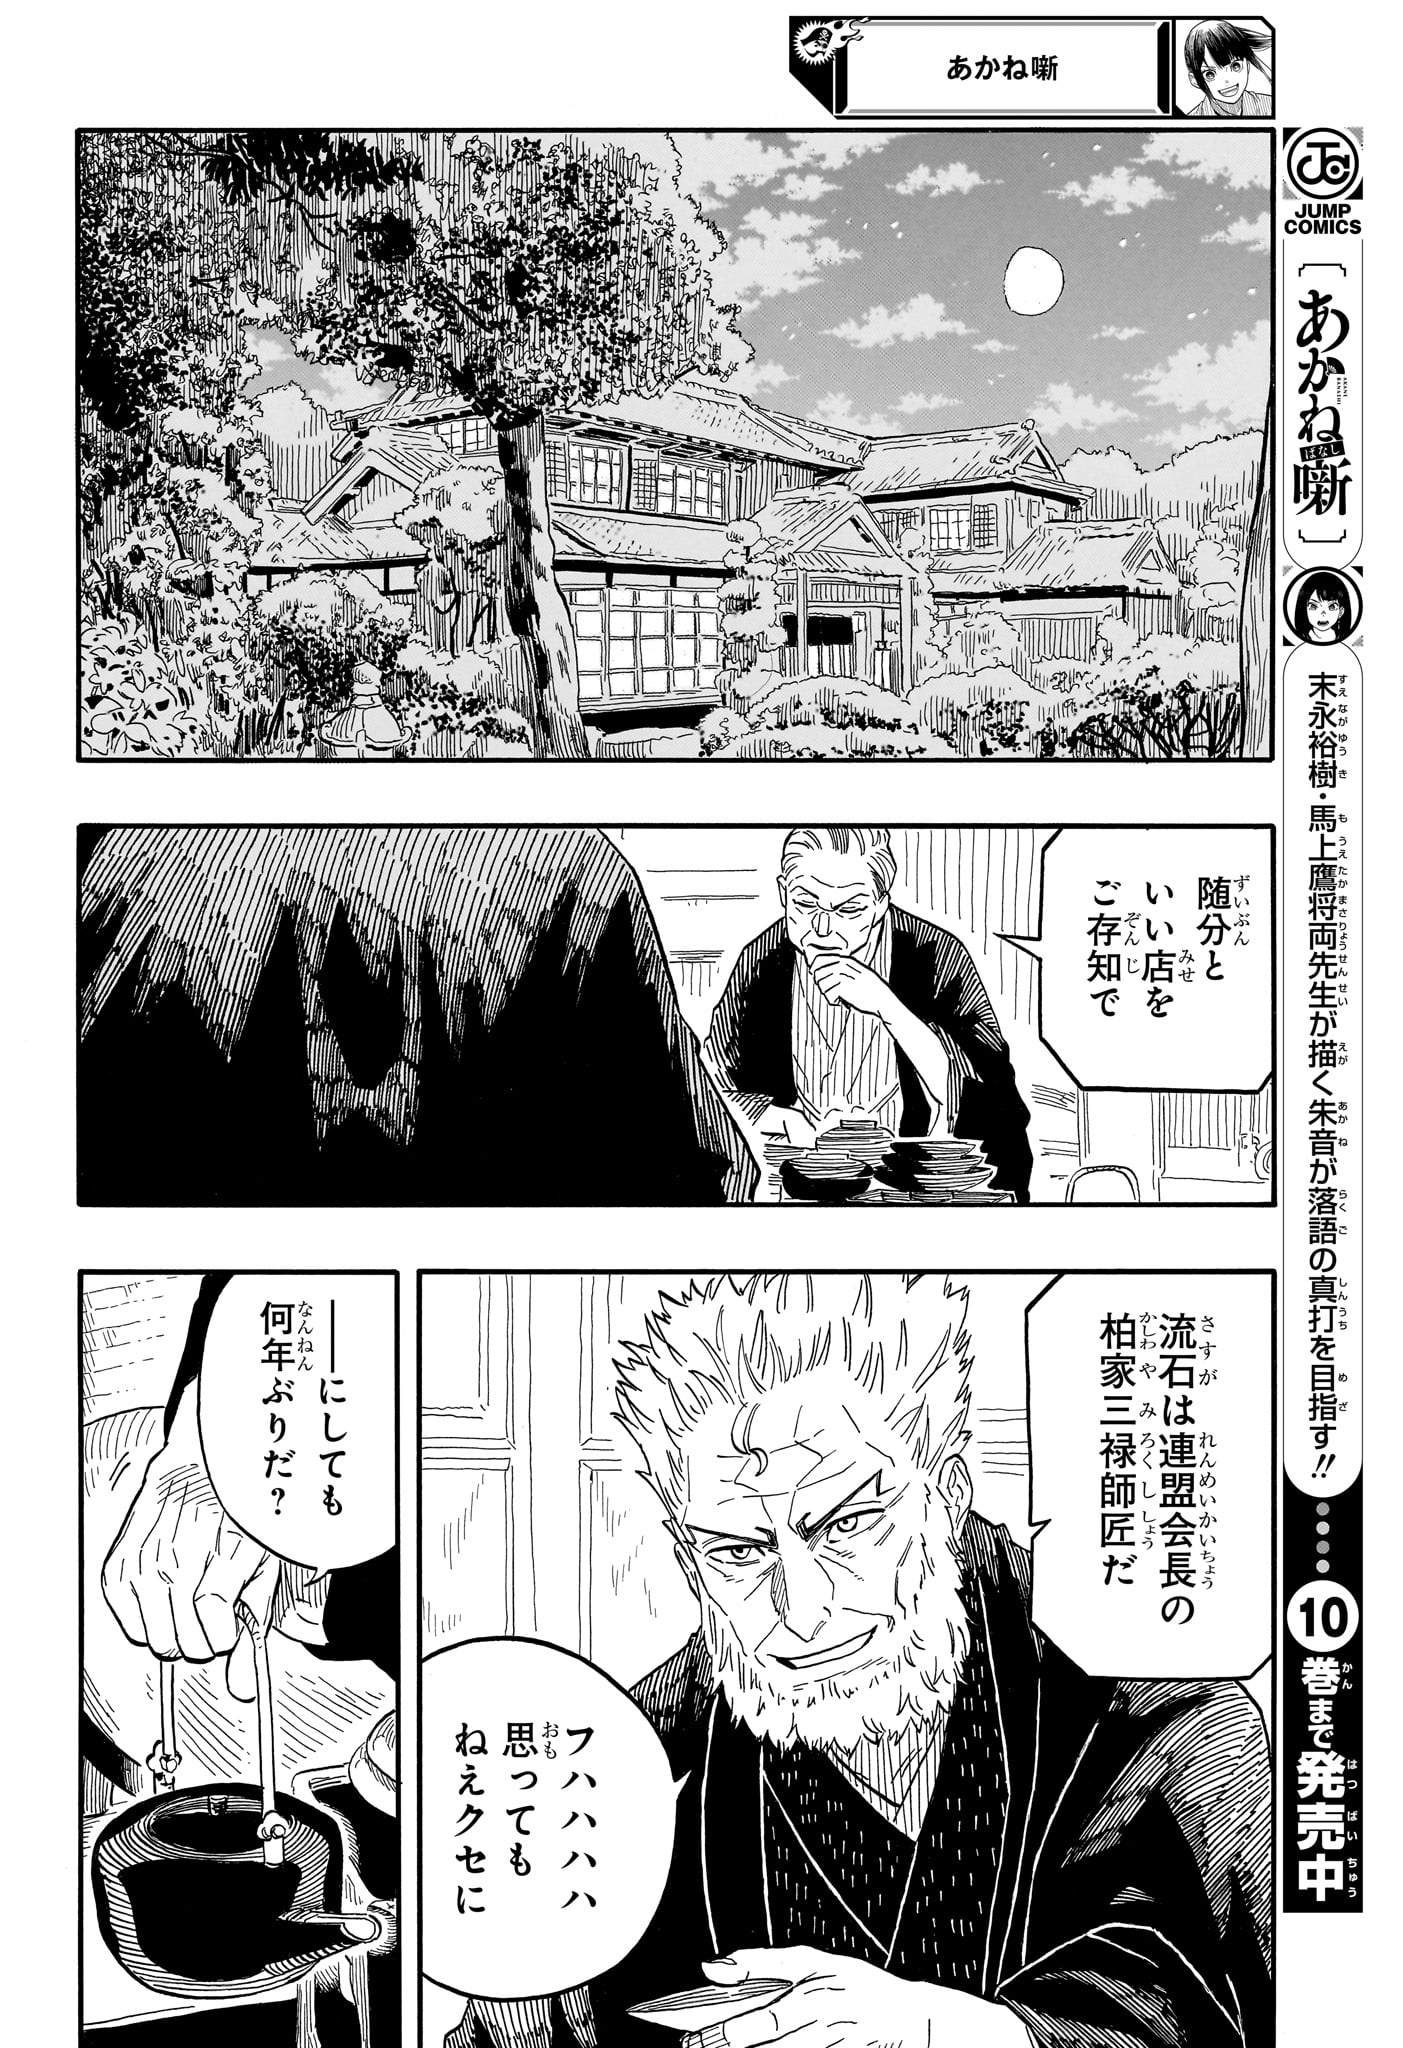 Akane-Banashi - Chapter 107 - Page 8